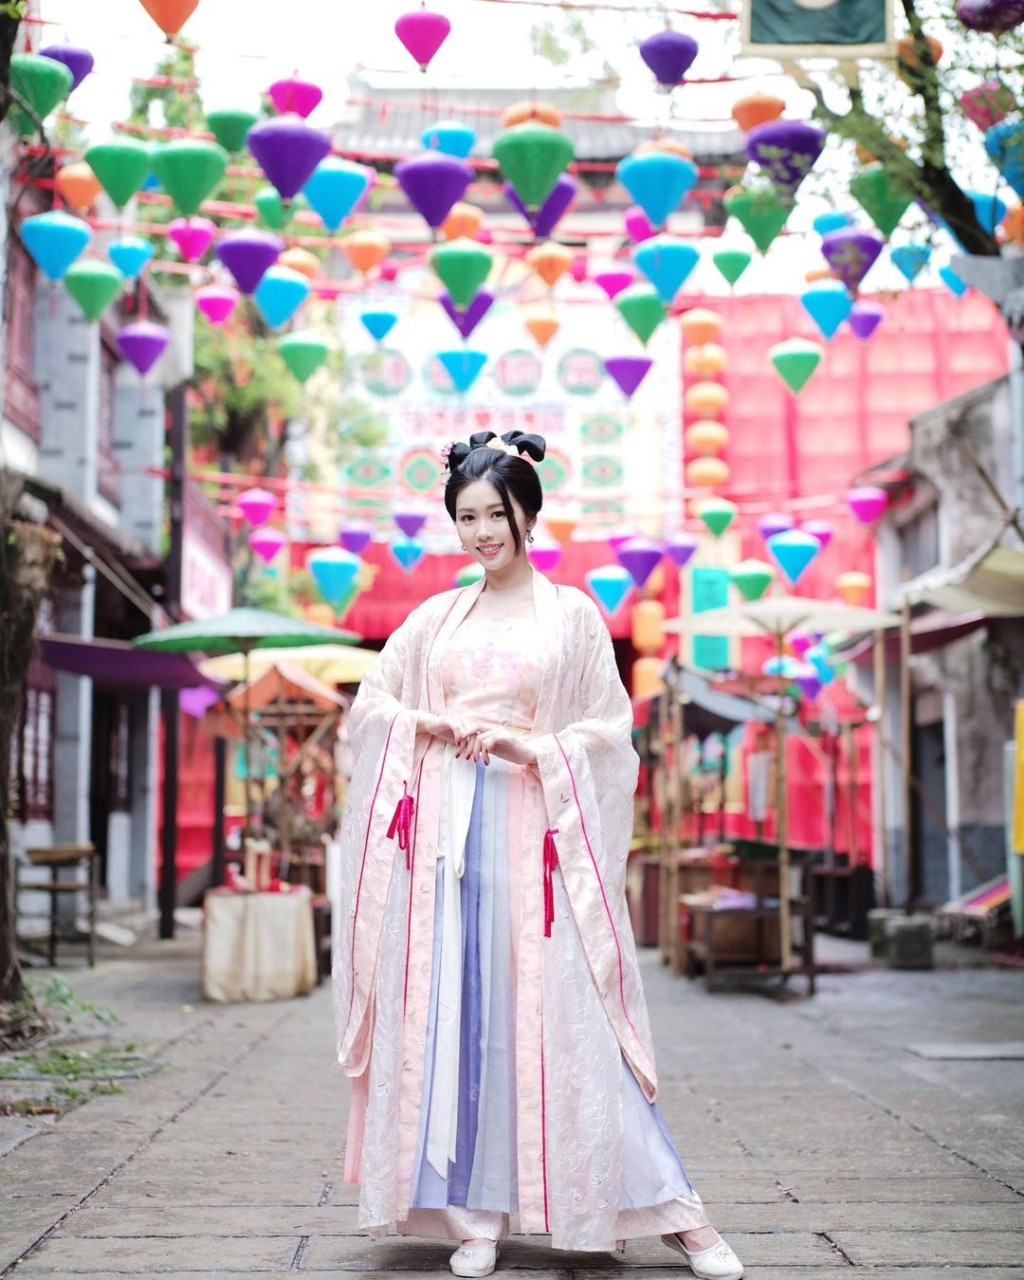 李芷晴获网民大赞是新古装女神。